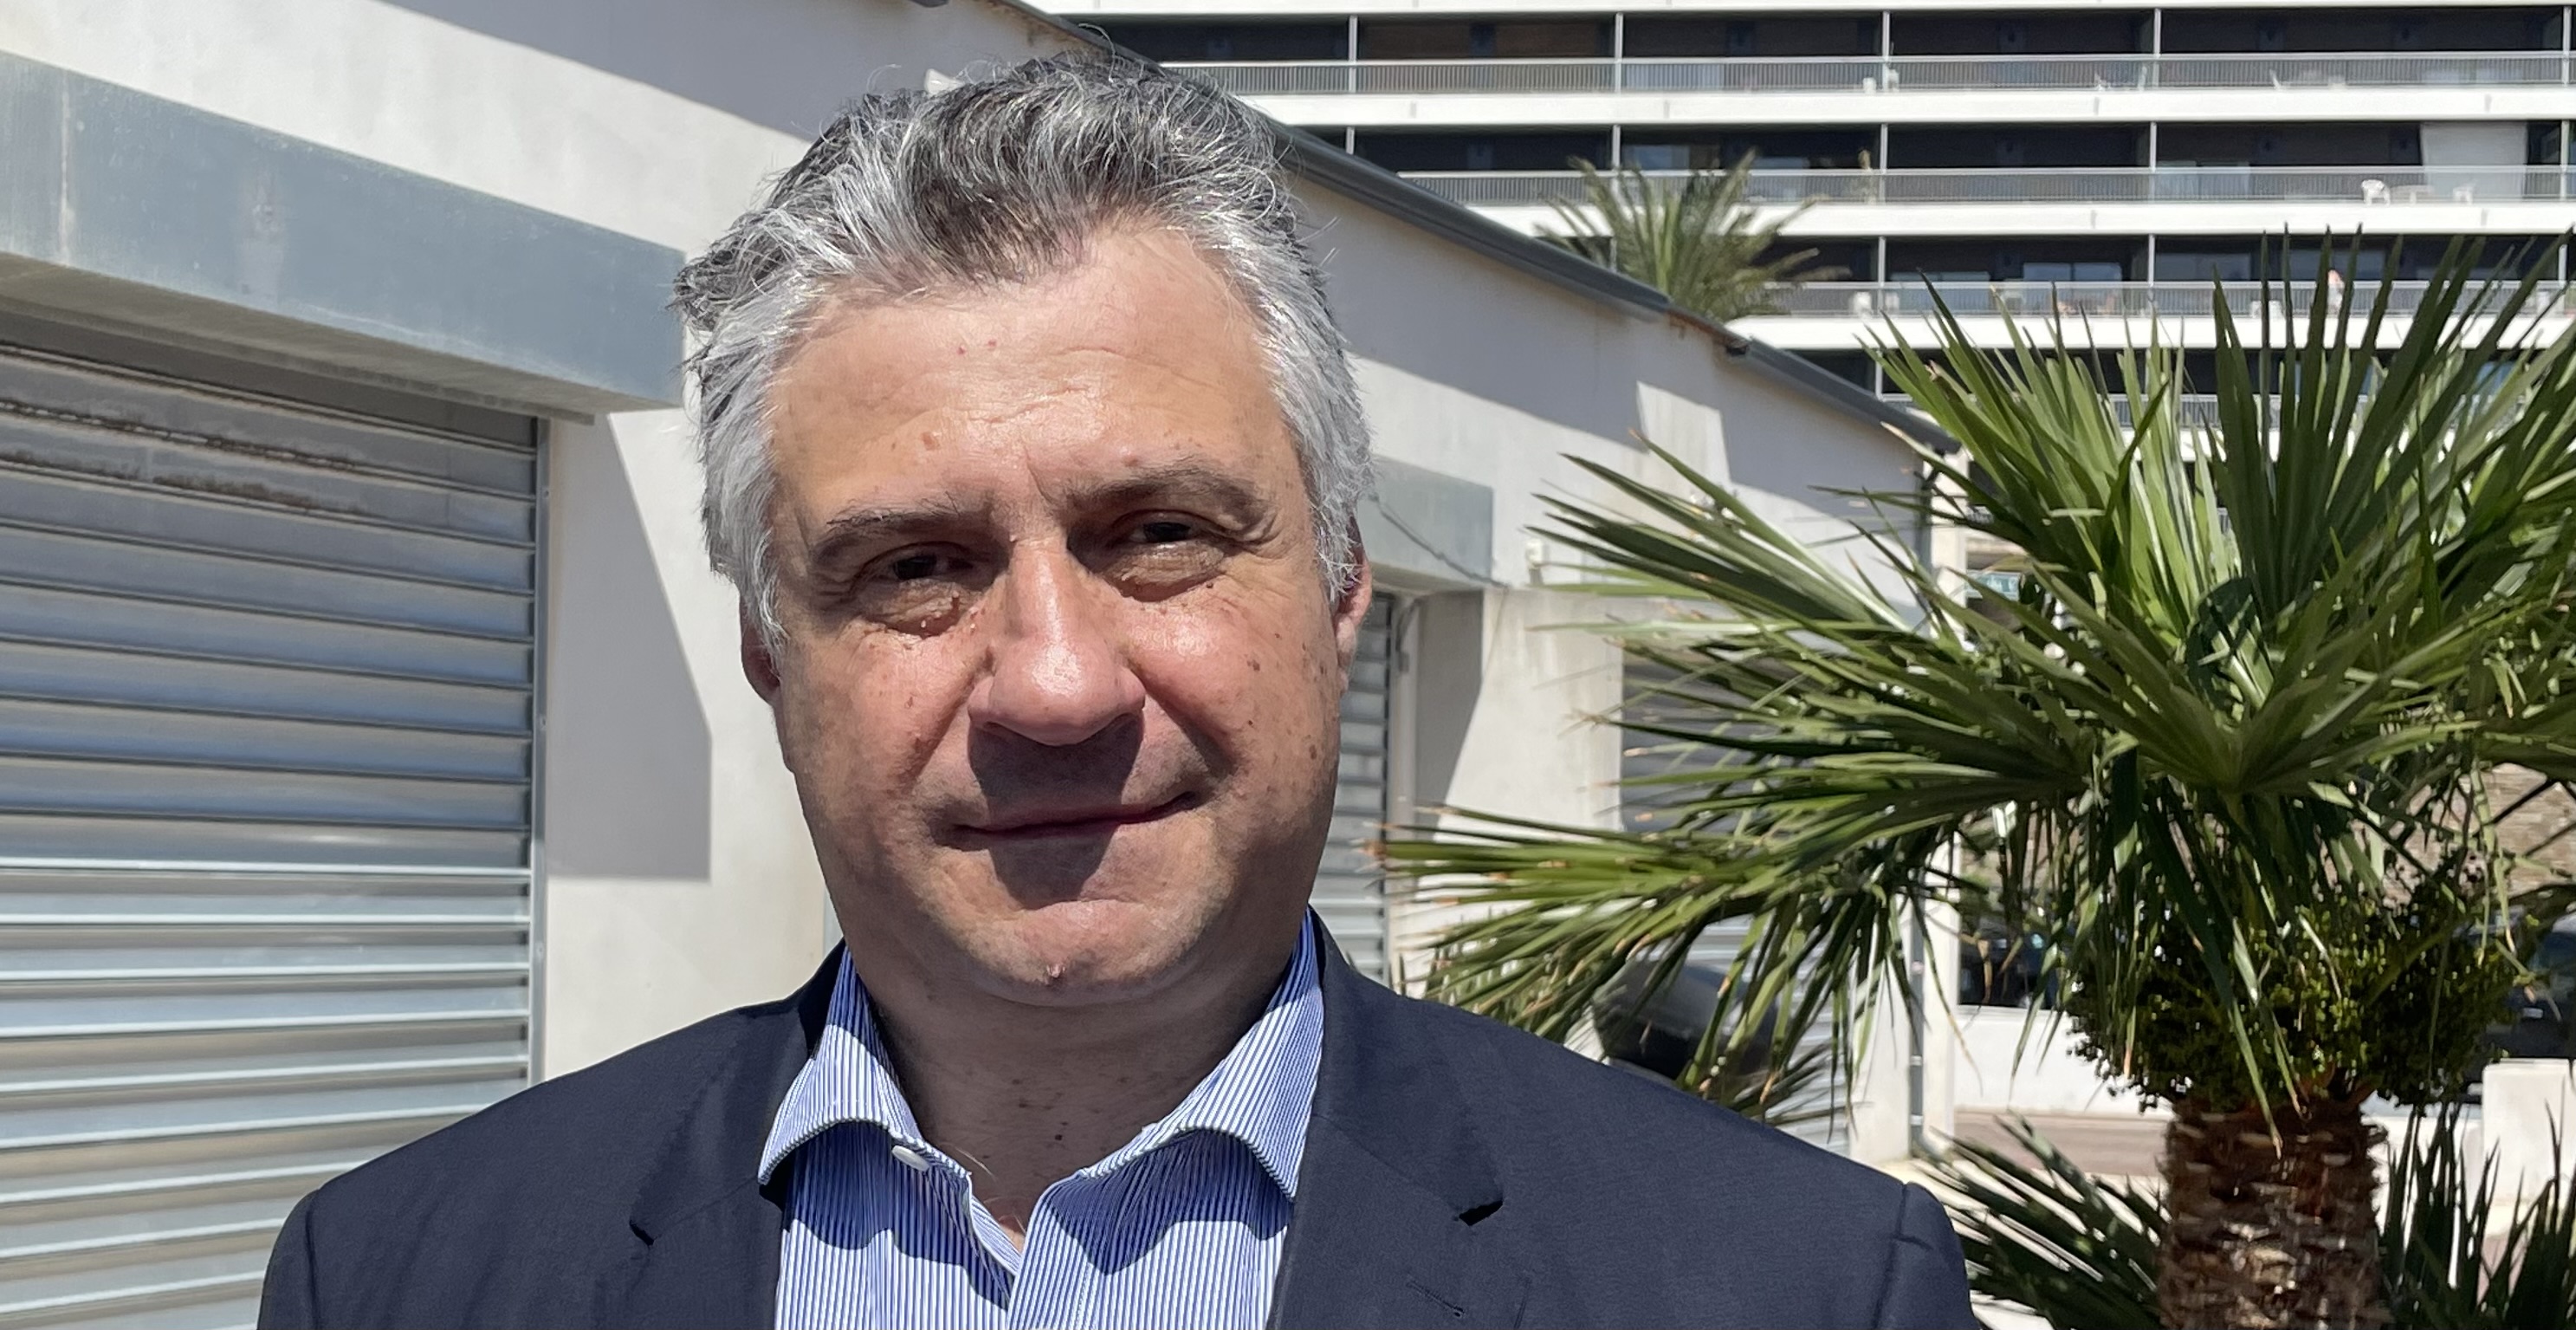 Jean-François Paoli, vice-président de la fédération corse du Parti radical, est candidat de la majorité présidentielle "Ensemble" à l’élection législative des 12 et 19 juin dans la 1ère circonscription de Haute-Corse. Photo CNI.